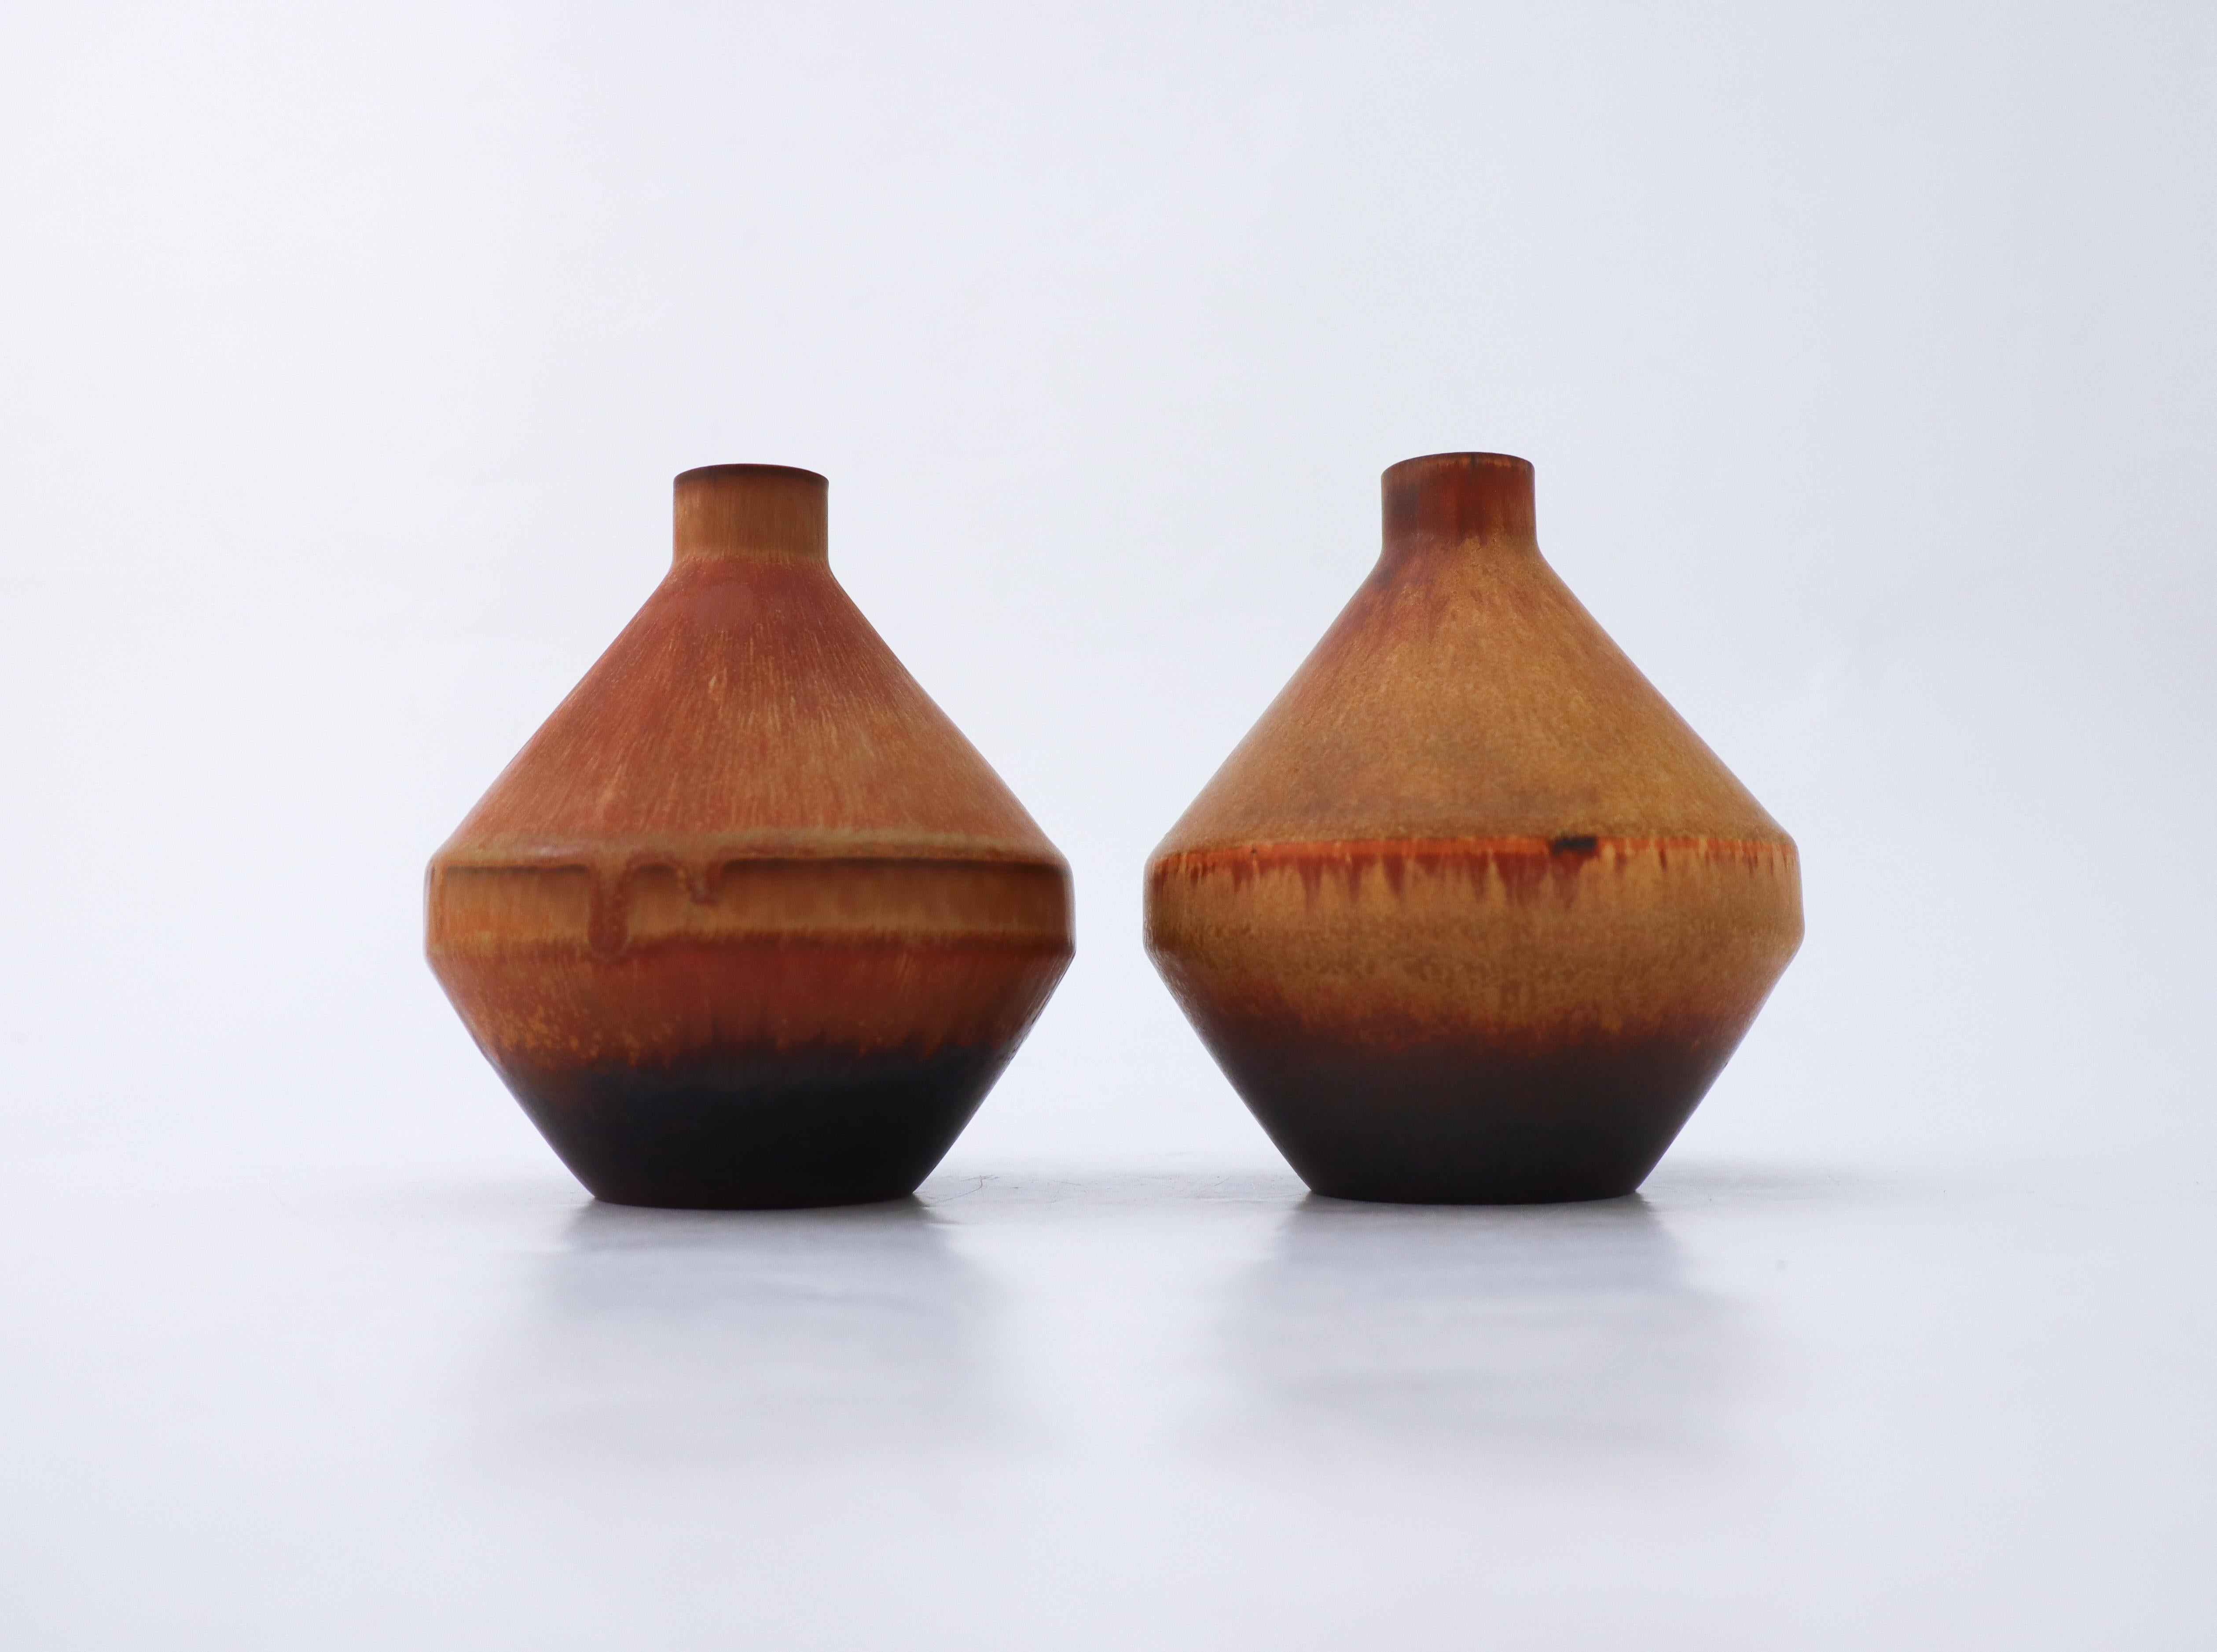 Une paire de jolis vases bruns conçus par Carl-Harry Stålhane au milieu du 20e siècle chez Rörstrand. Les vases mesurent 11 cm de haut et 10,5 cm de diamètre. Ils sont tous deux marqués comme étant de 2ème qualité mais sont en excellent état à